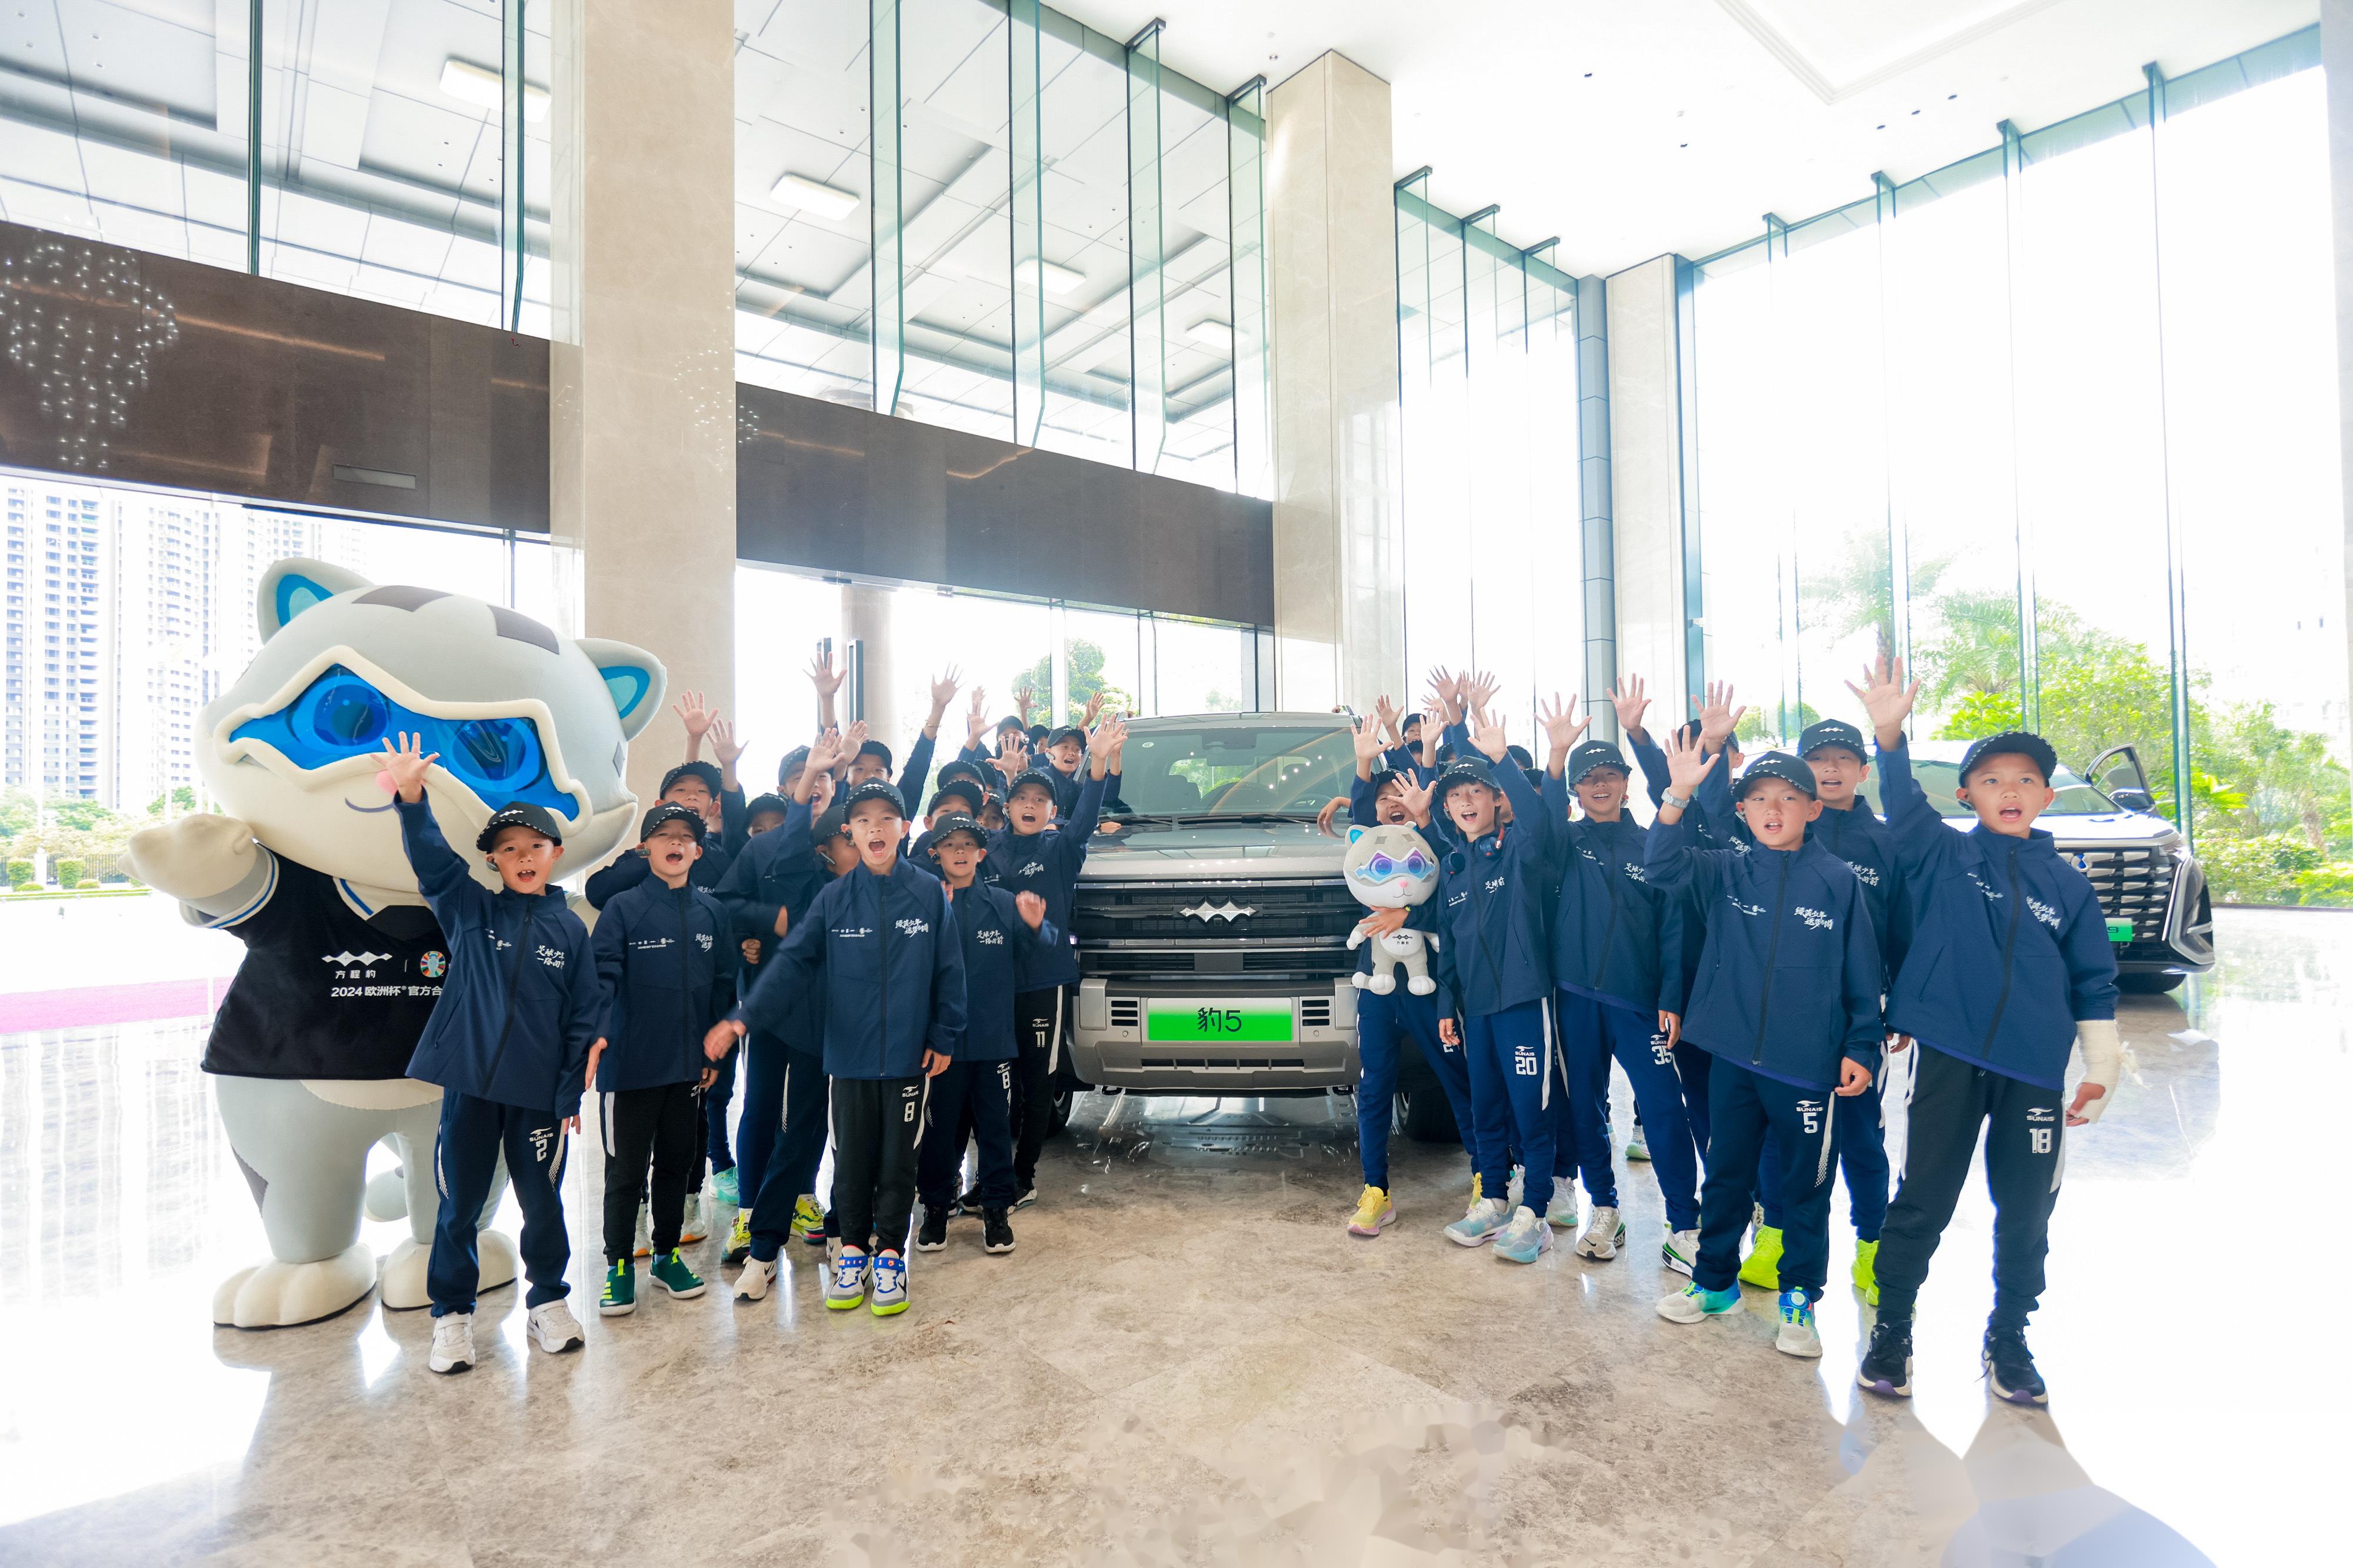 6月12日,比亚迪在深圳坪山总部举办足球少年 一路向前出征仪式,助力